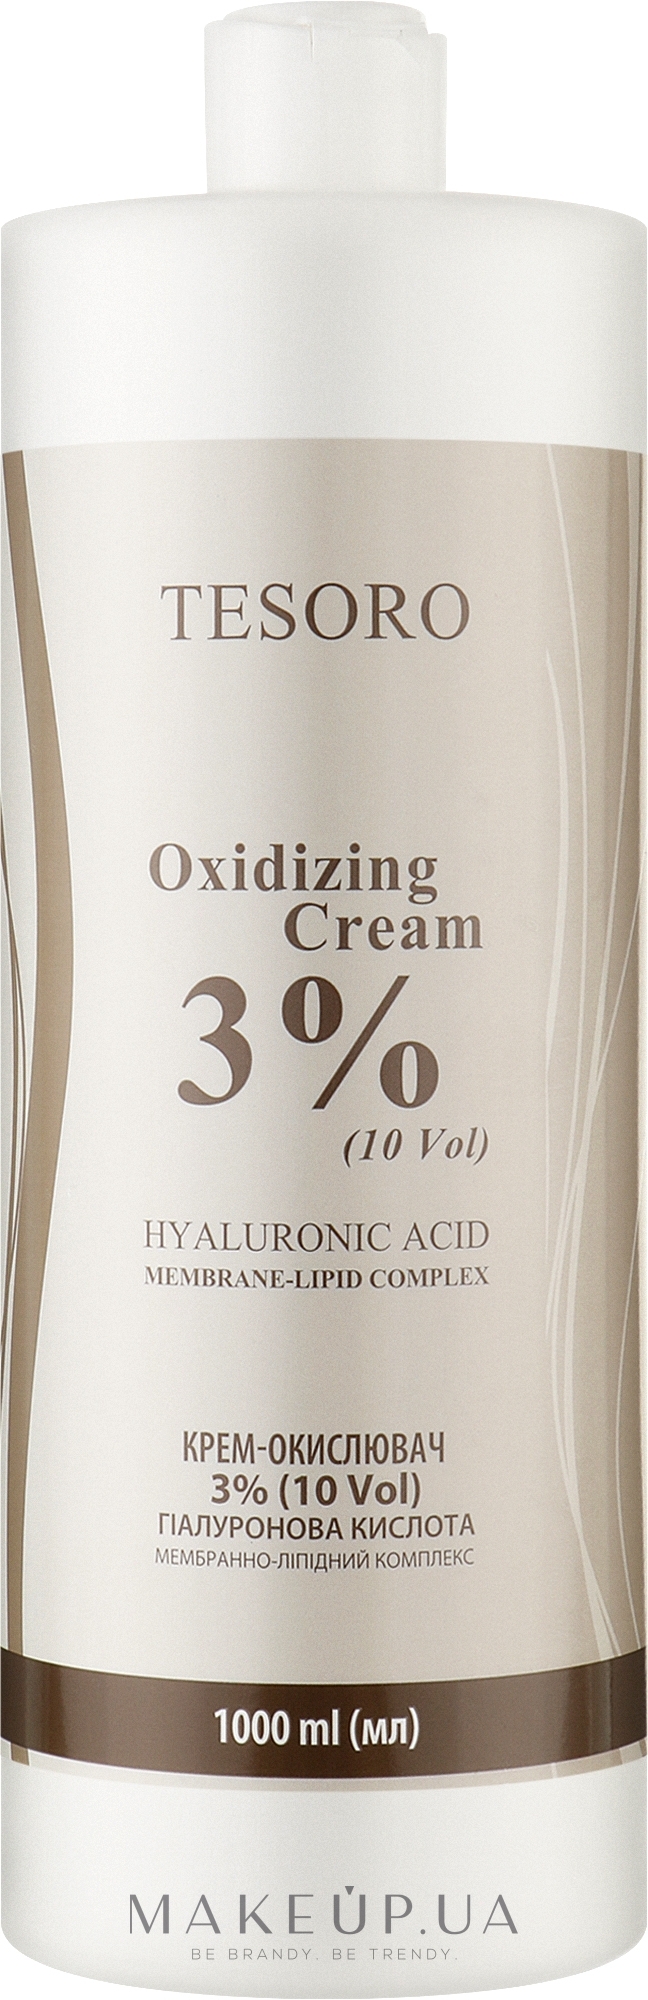 Крем-окислитель 3% - Moli Cosmetics Tesoro Oxidizing Cream 10 Vol — фото 1000ml